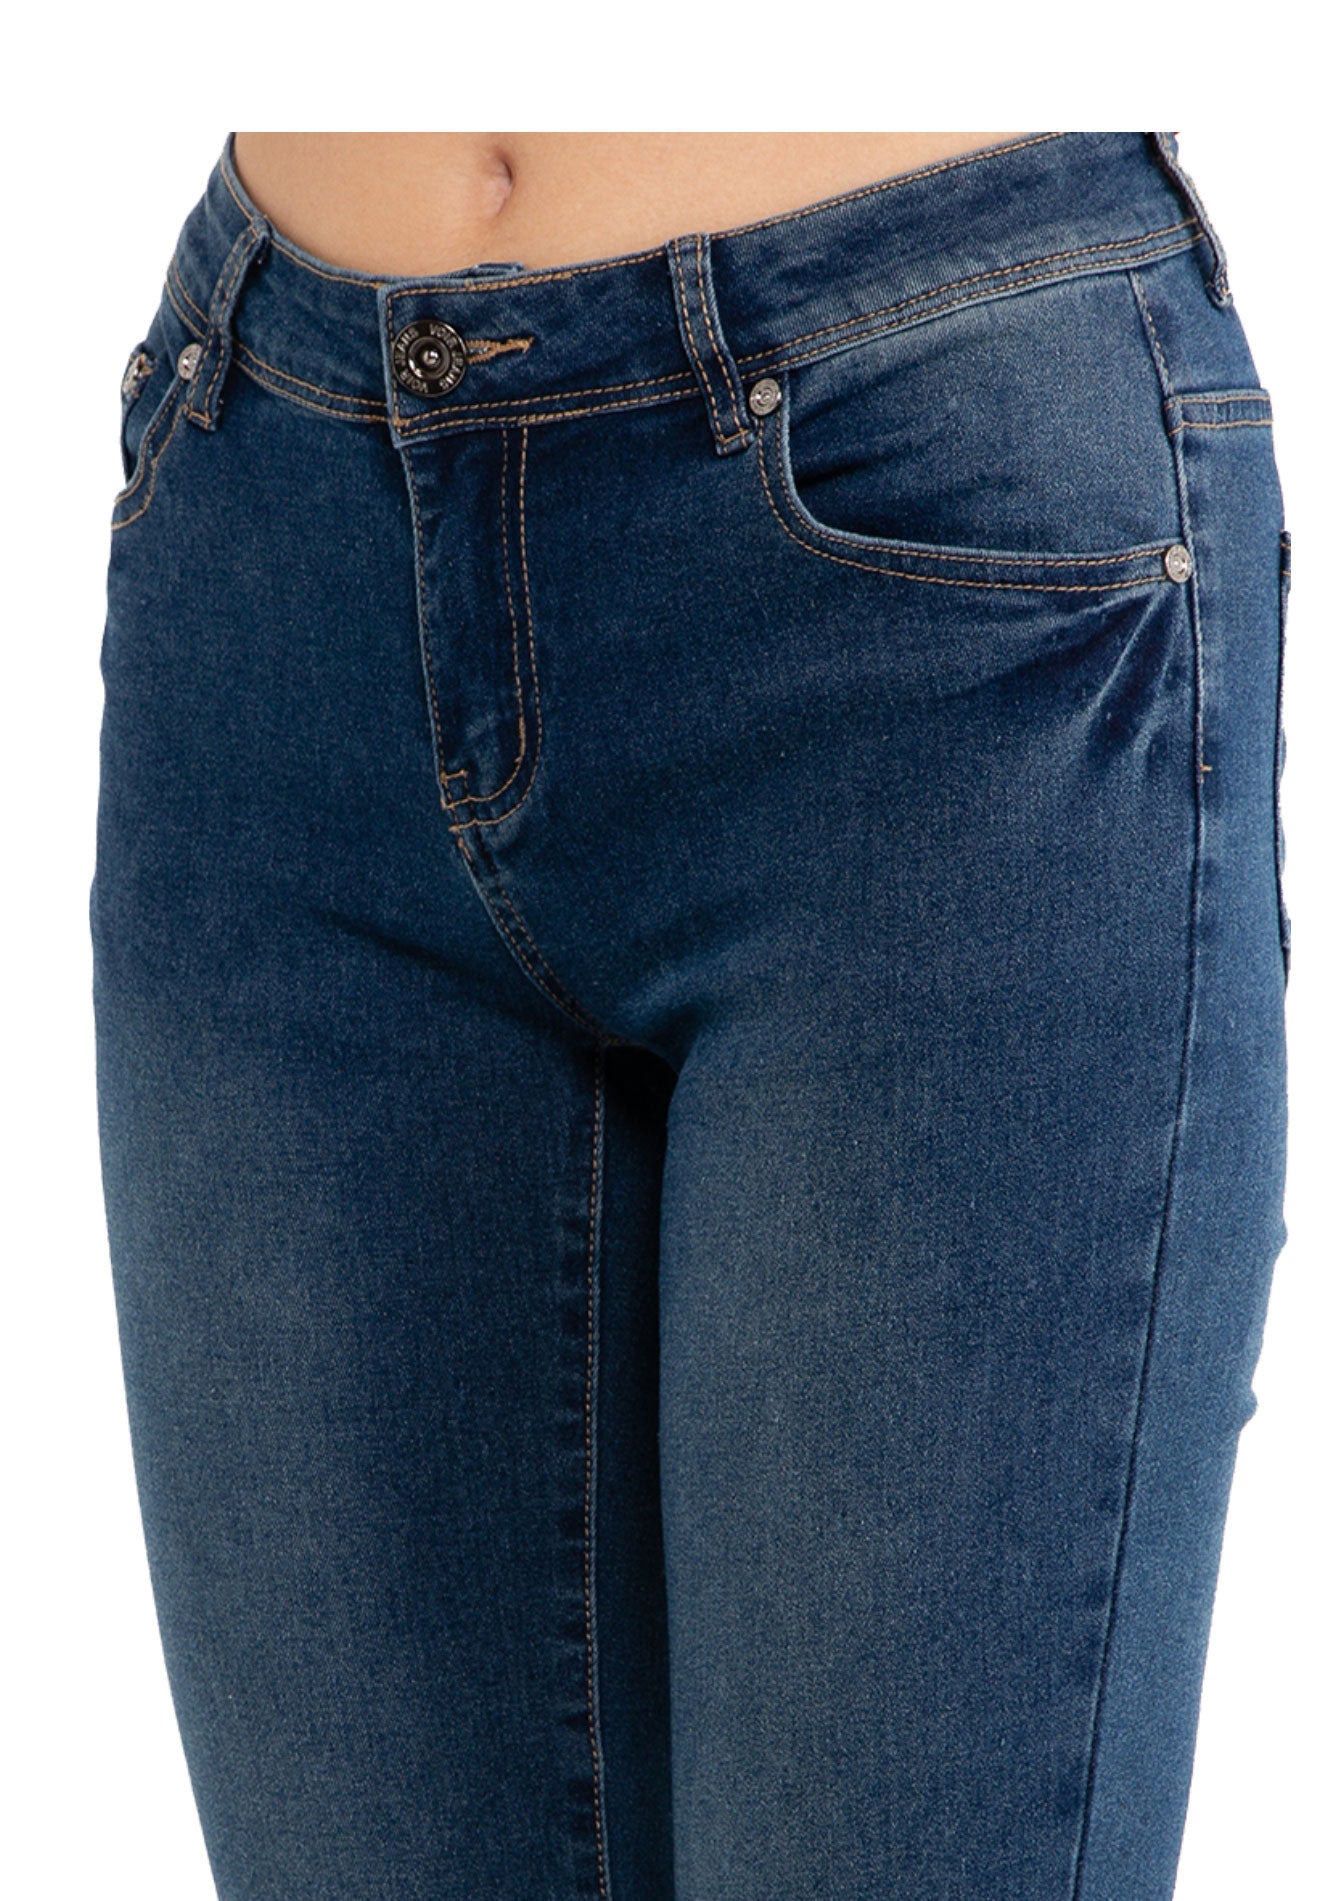 VOIR JEANS #305 Mid Waist Relax Slim Cut Denim Jeans